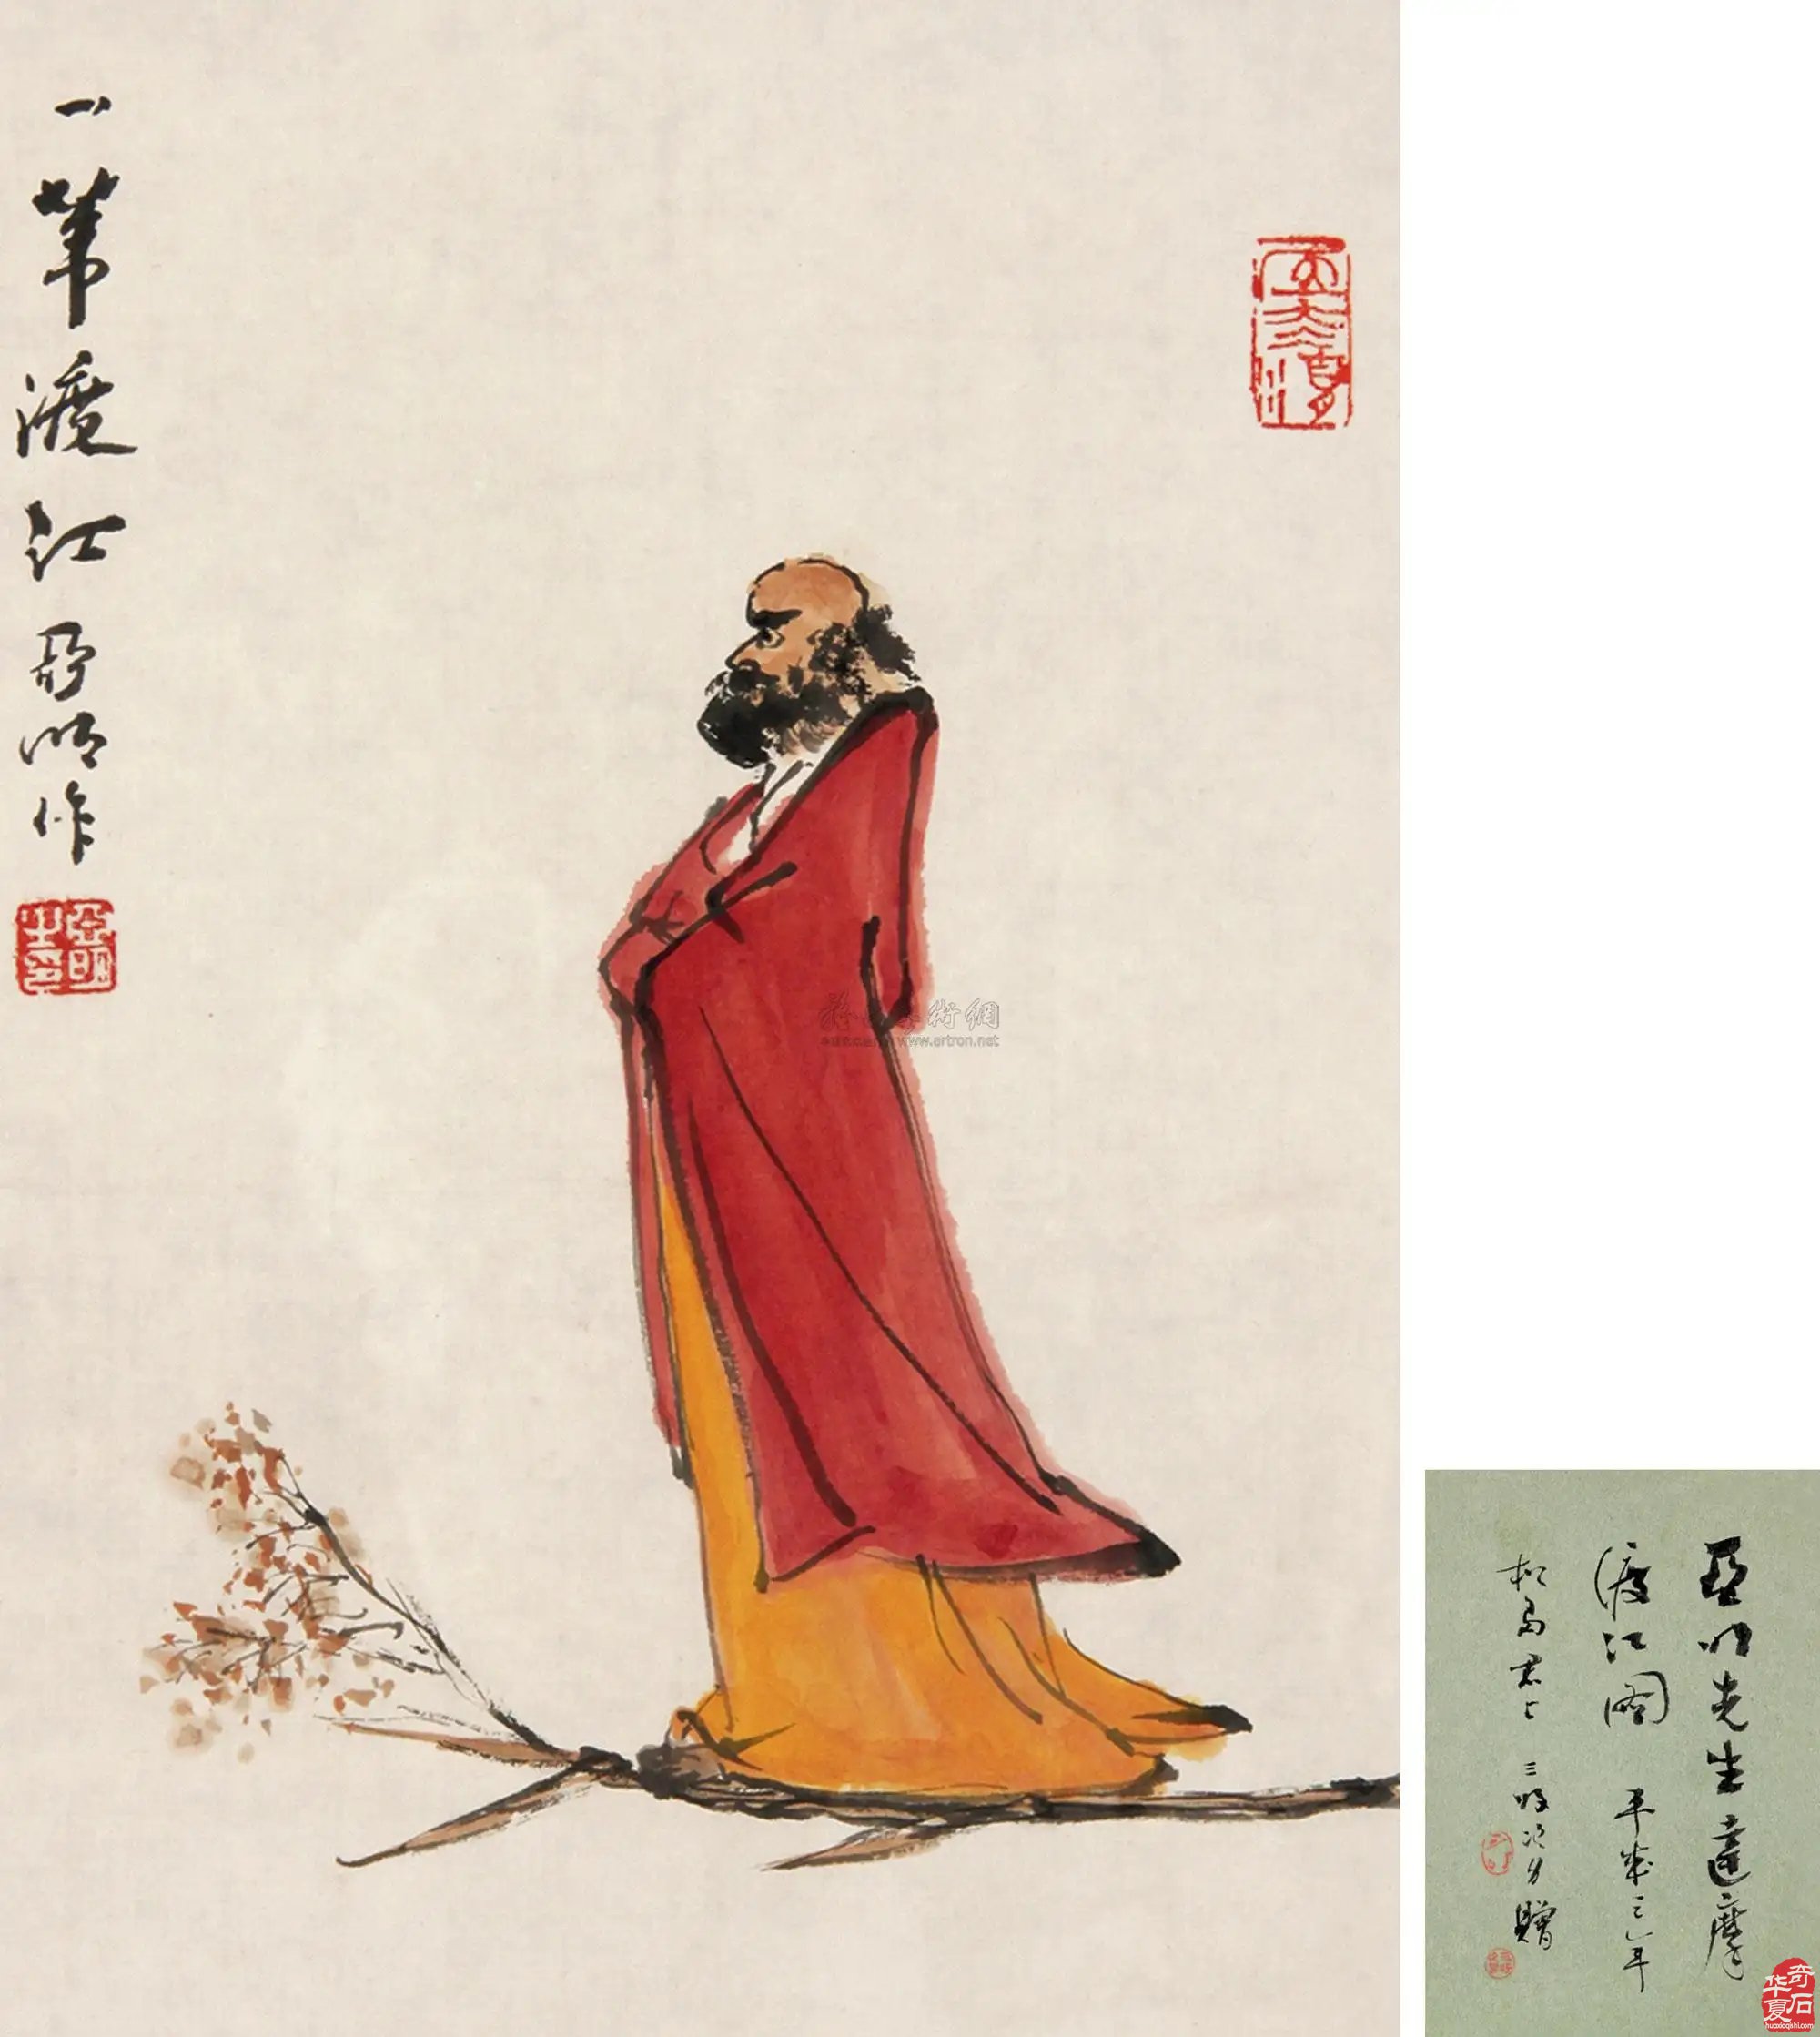 赏析奇石达摩祖师 了解中国禅宗文化